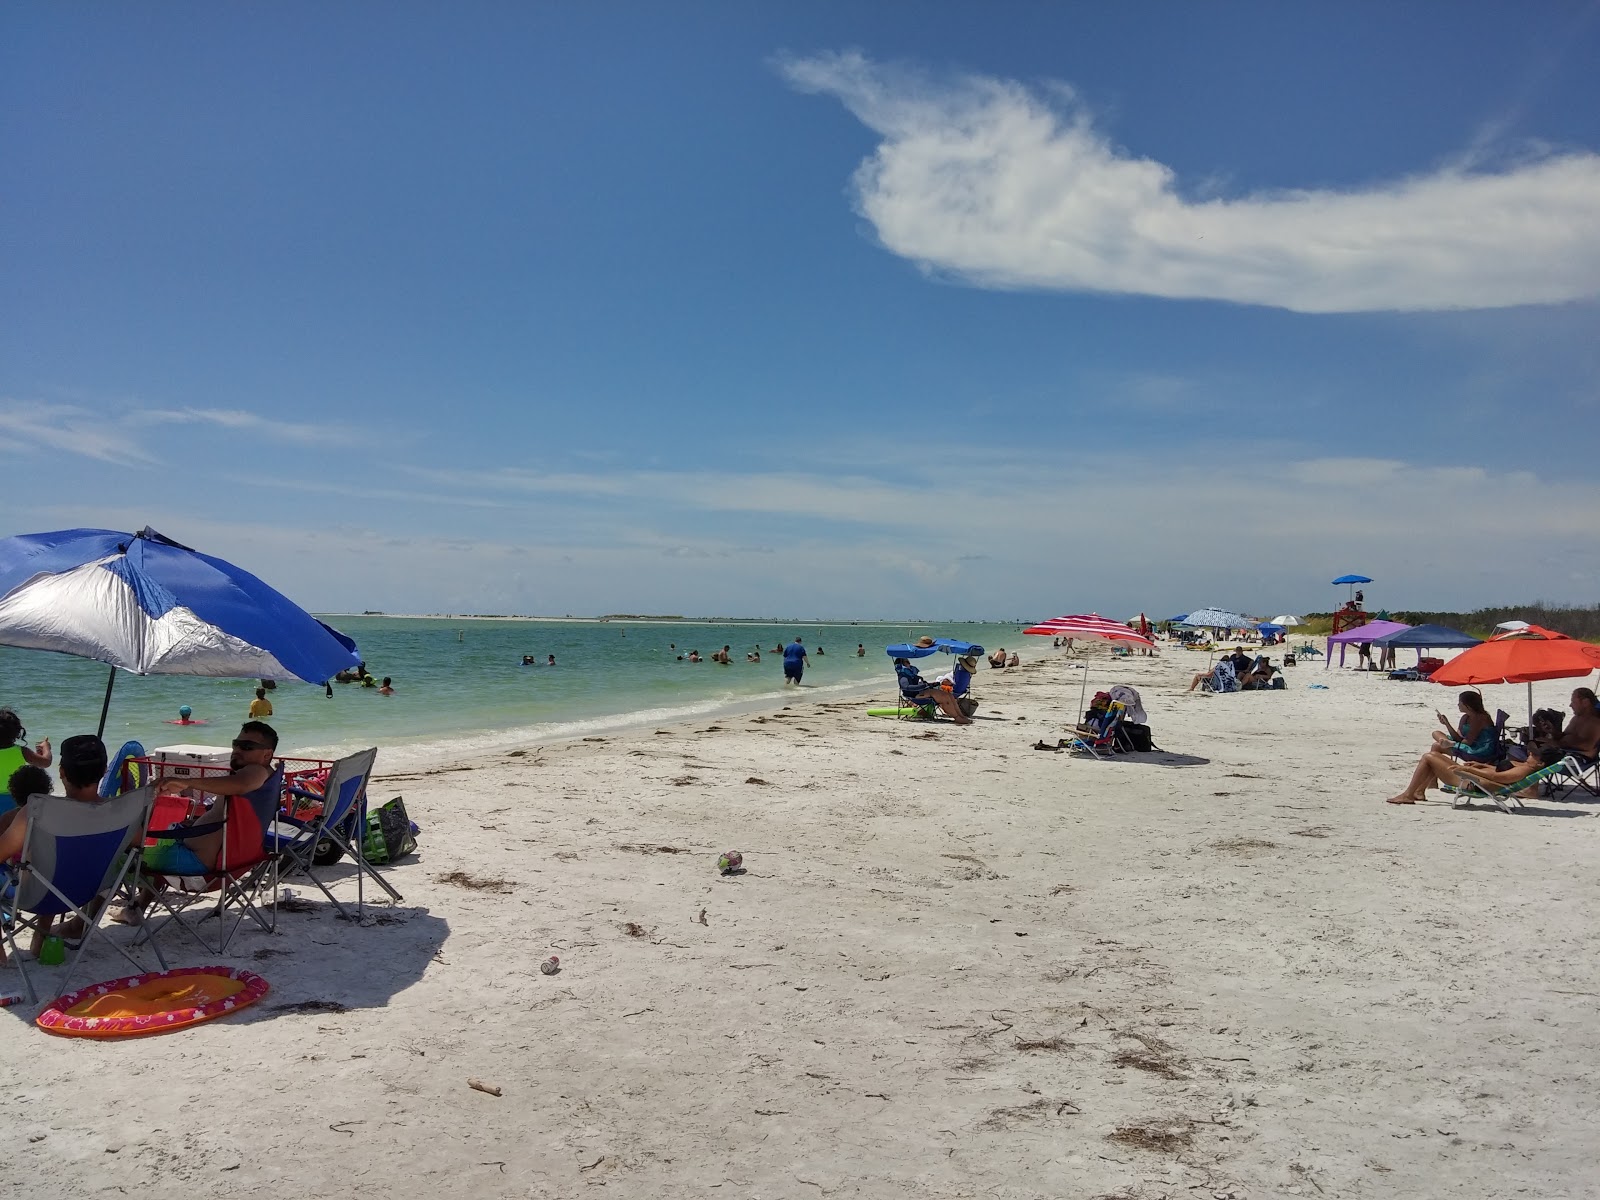 Zdjęcie Fort desoto beach - popularne miejsce wśród znawców relaksu